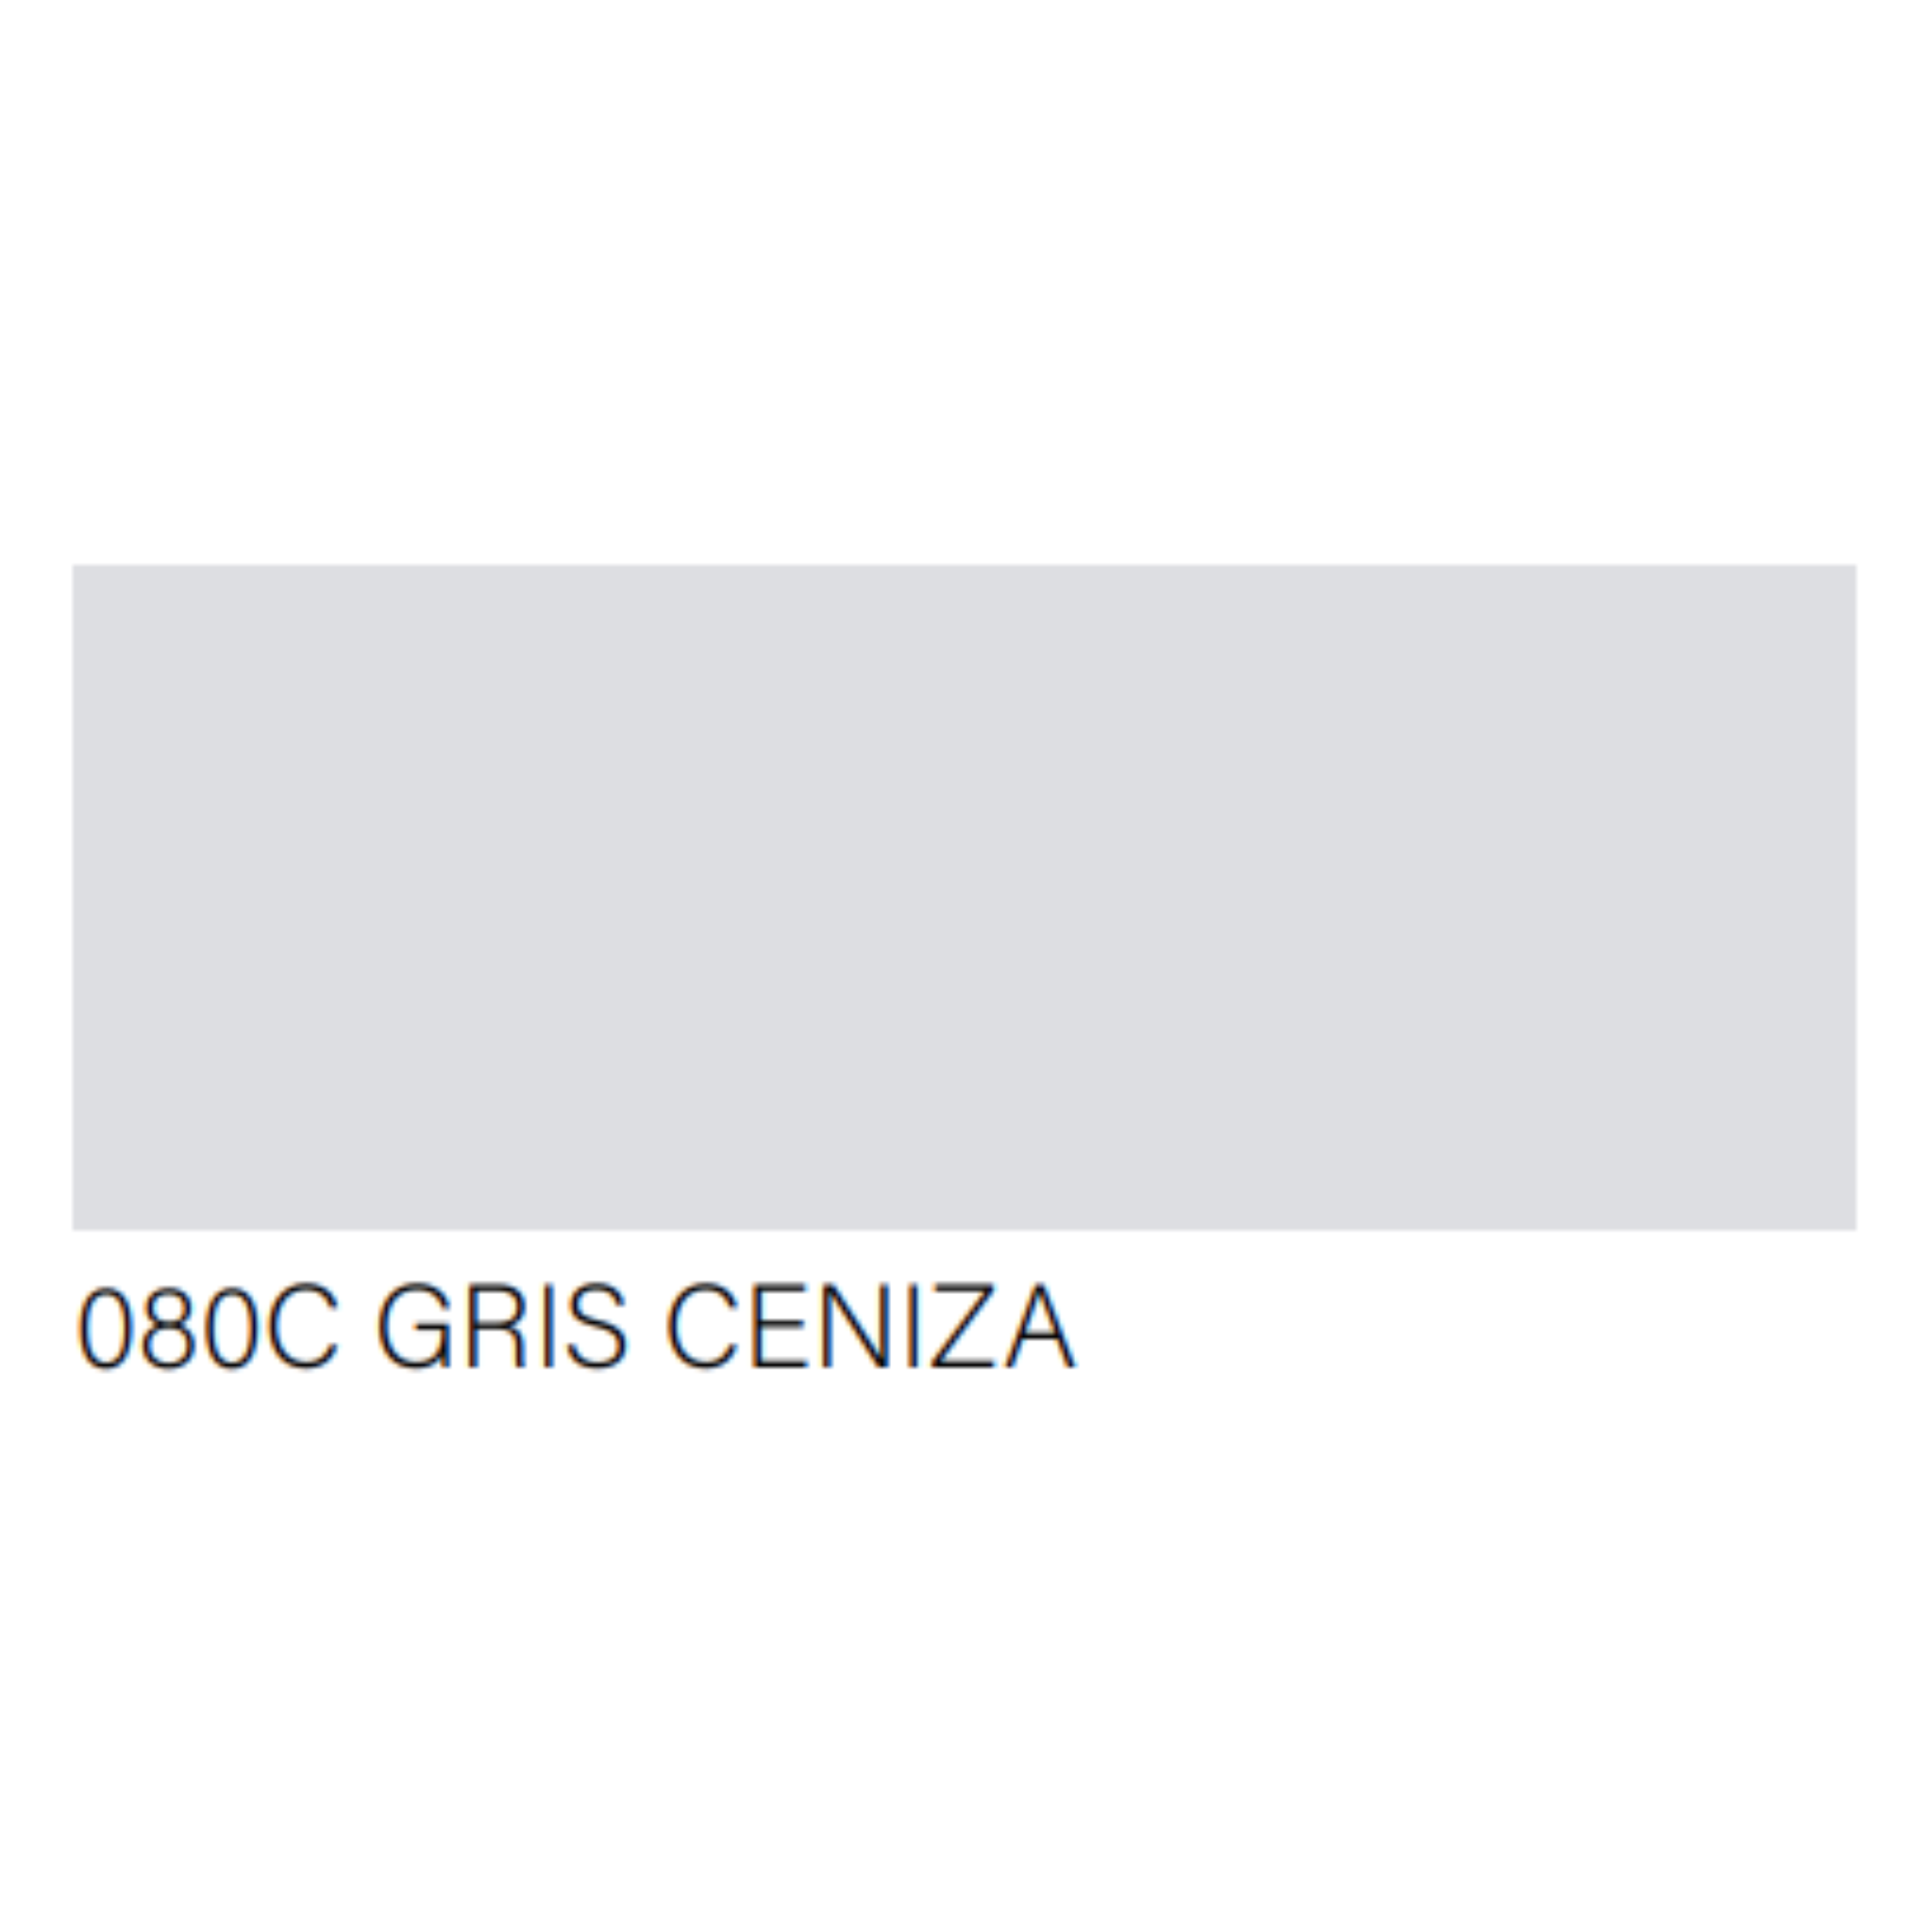 PINTURA EN SPRAY COLOR GRIS CLARO (GRIS CENIZA)- ABRO 80-C - 4G